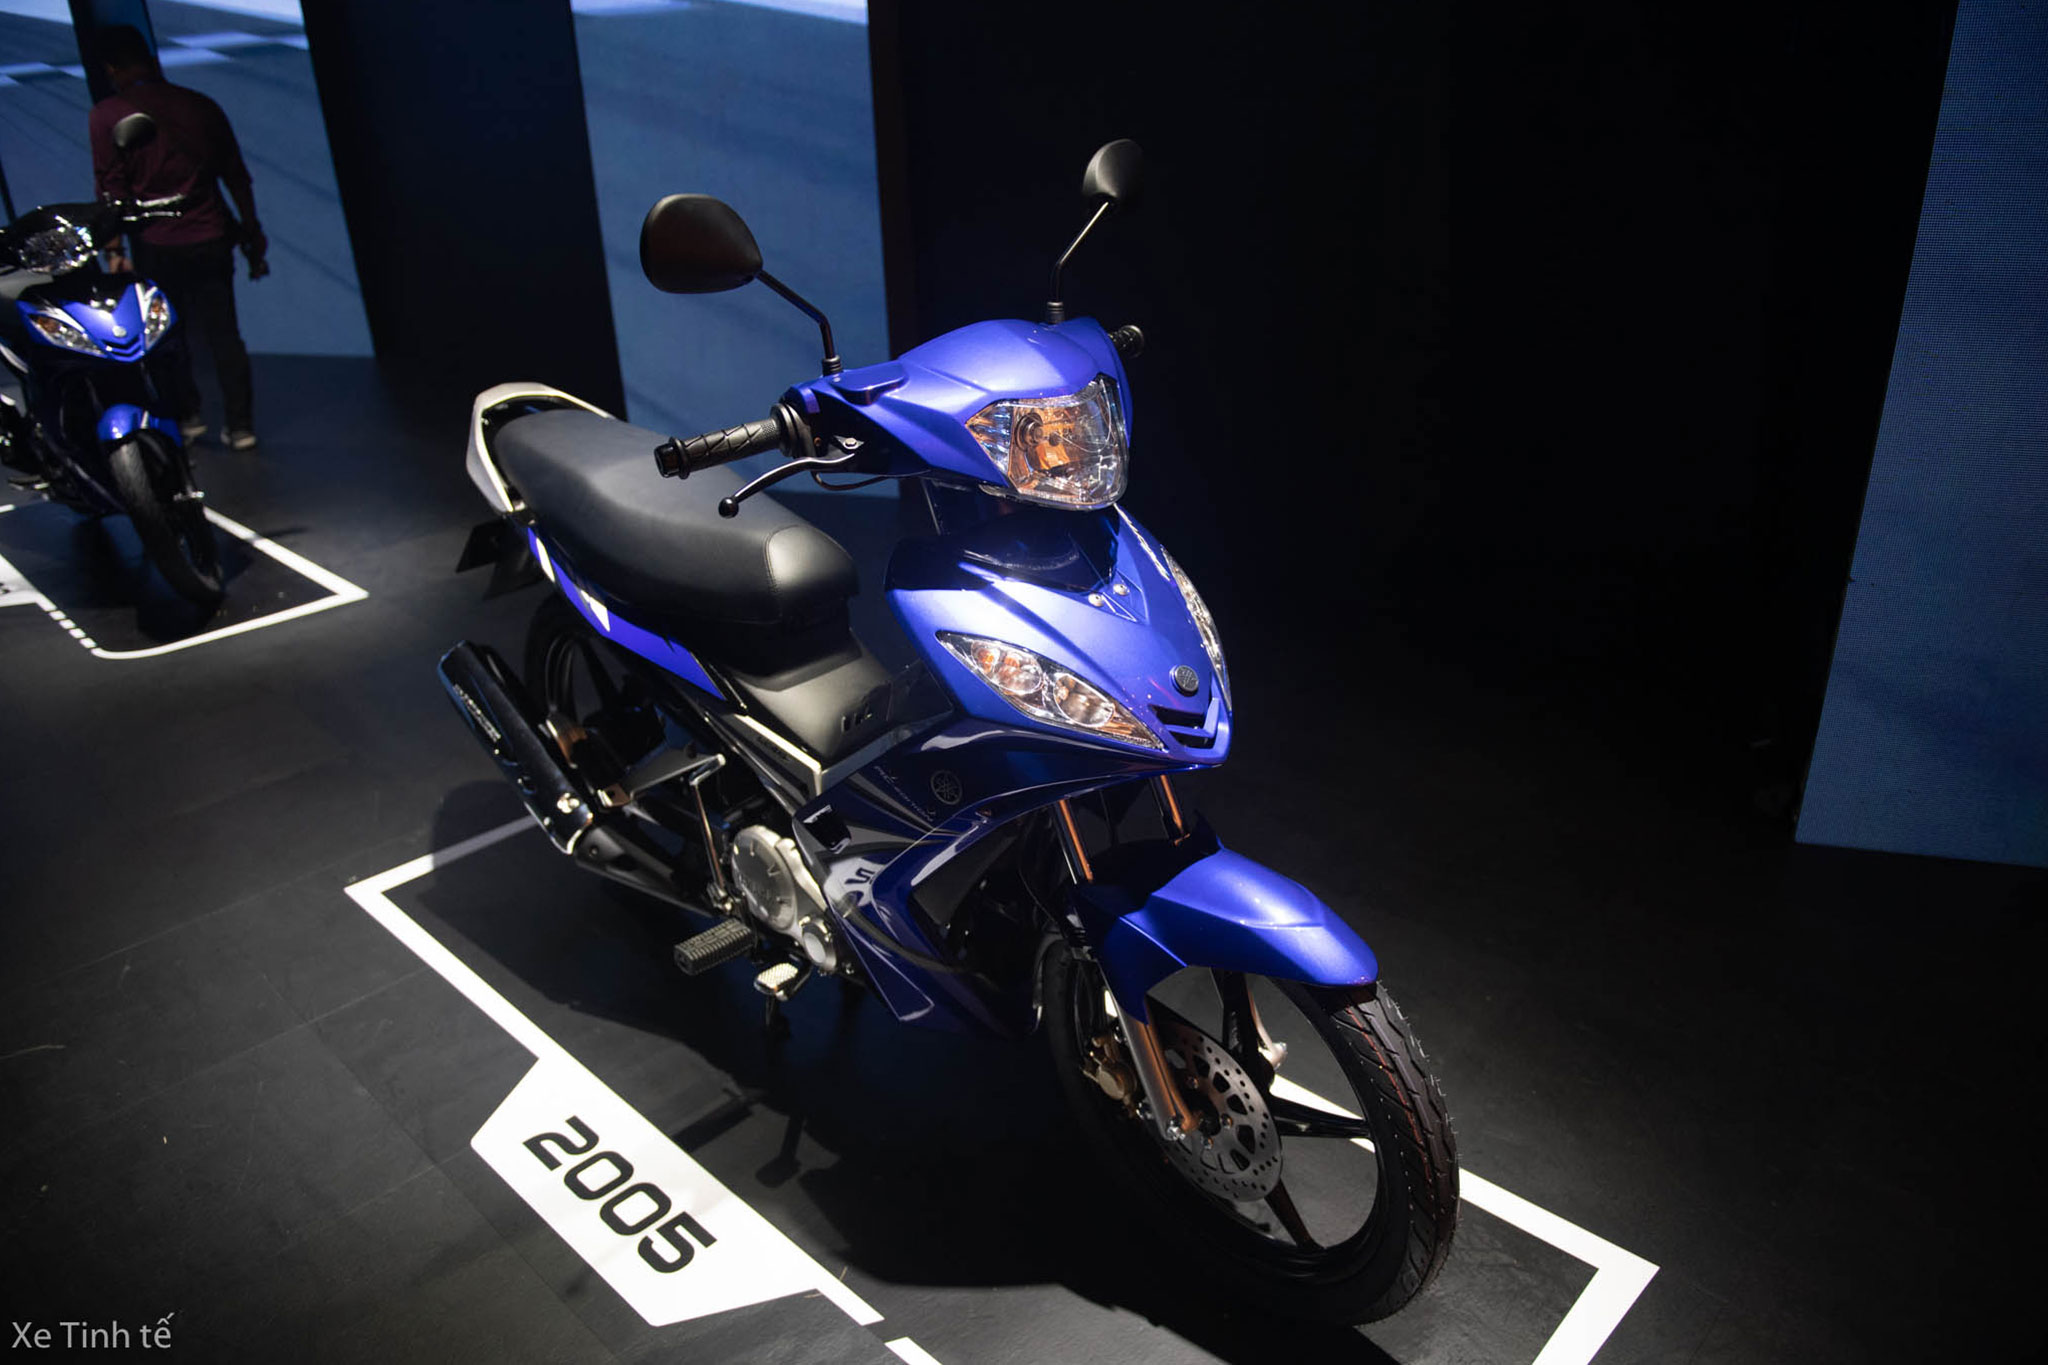 Yamaha Exciter 135 đã ngừng sản xuất được định giá hơn 82 triệu đồng